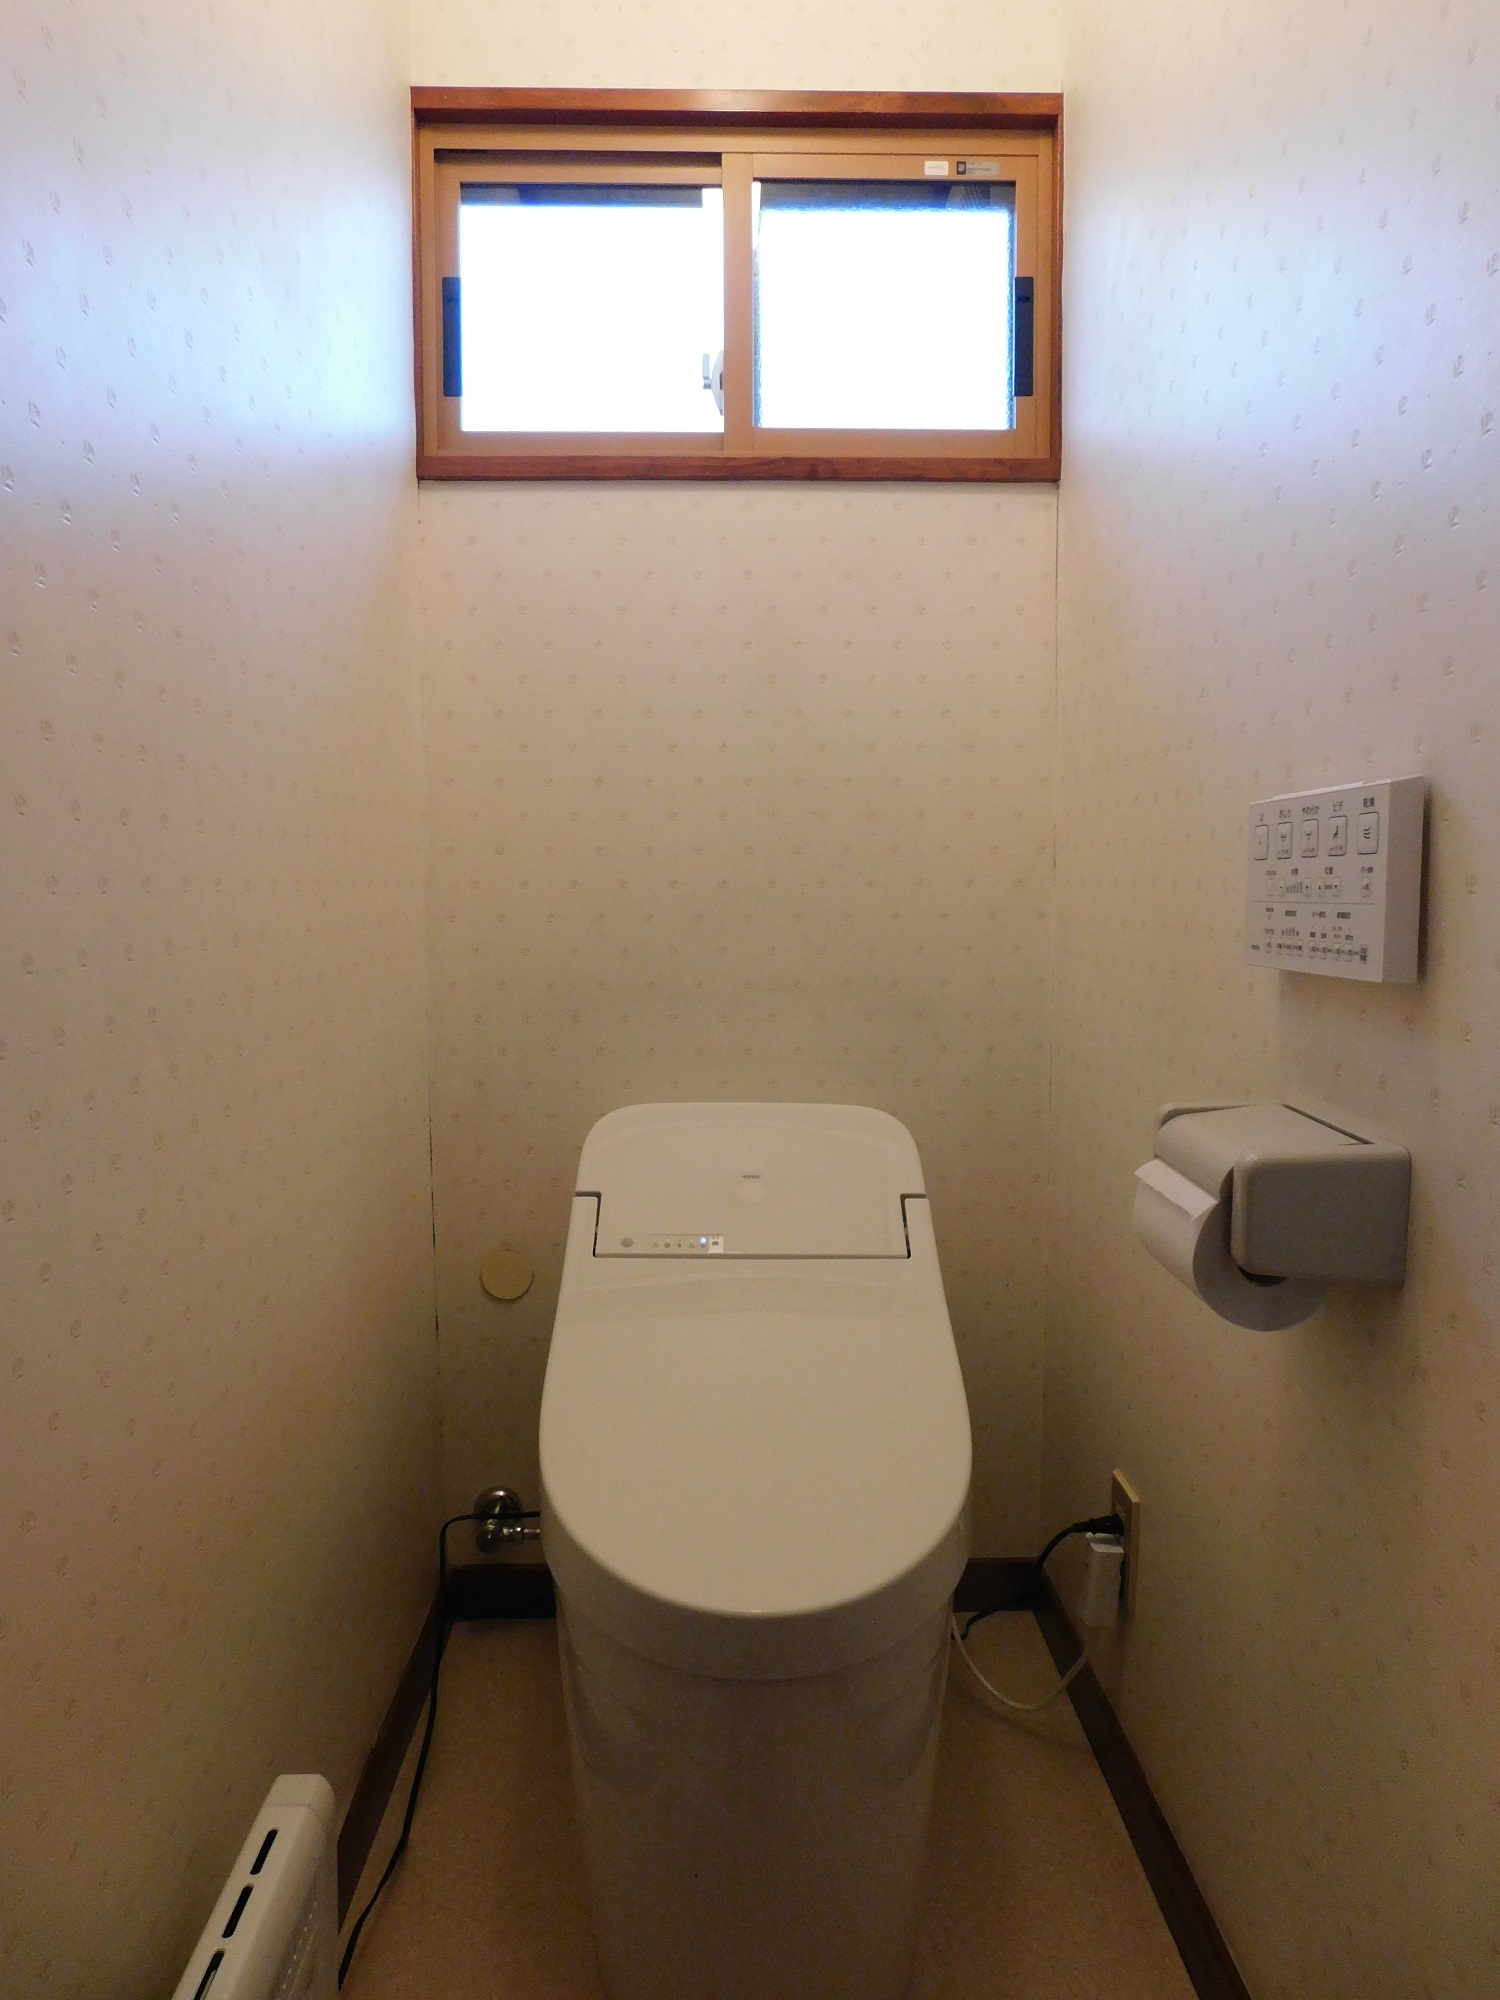 トイレの窓を見直しましょう 株式会社アサヒ興業